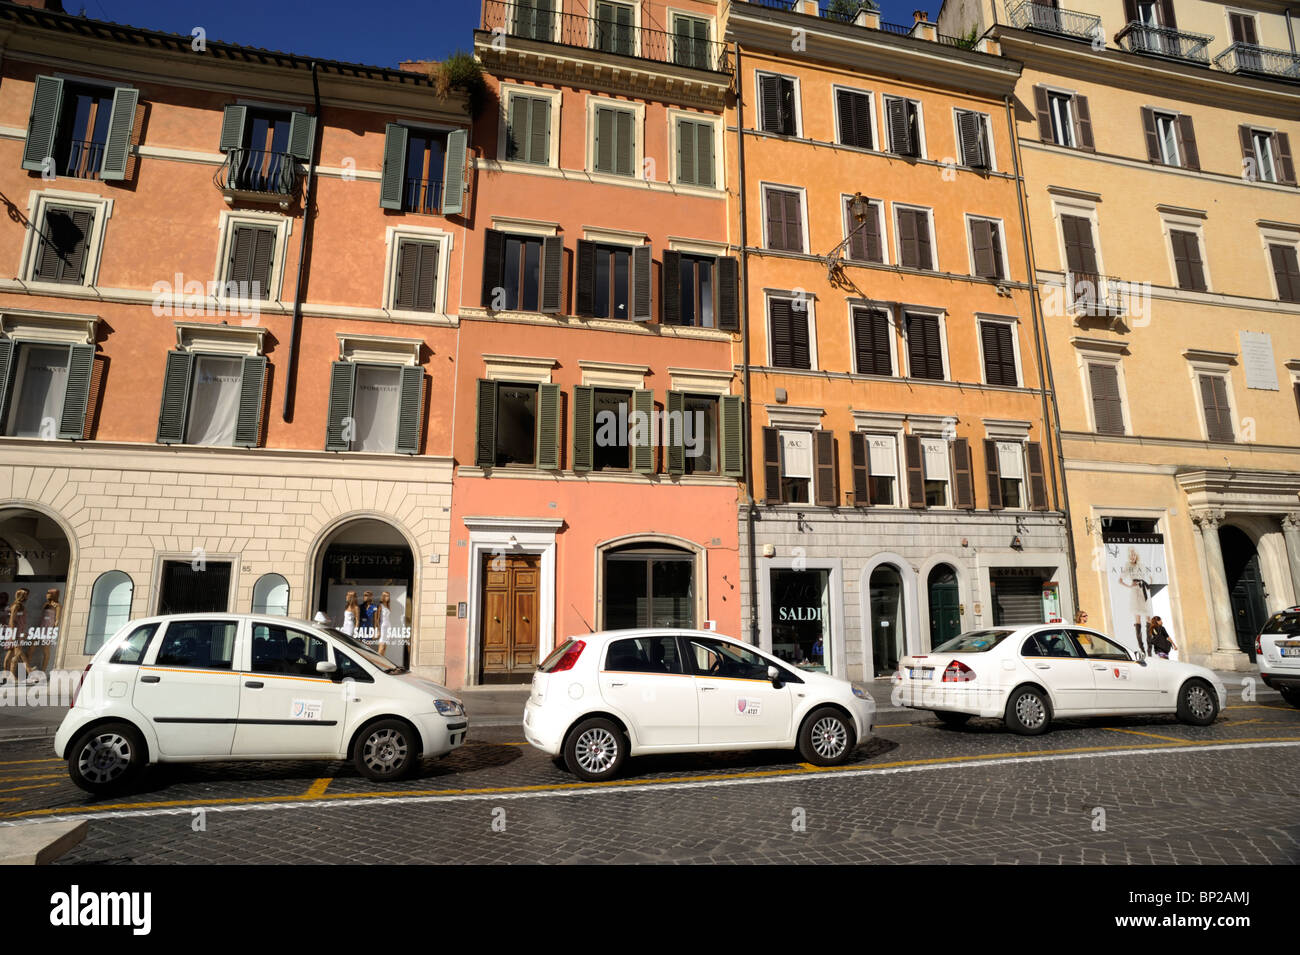 Italie, Rome, station de taxi sur la Piazza di Spagna Banque D'Images